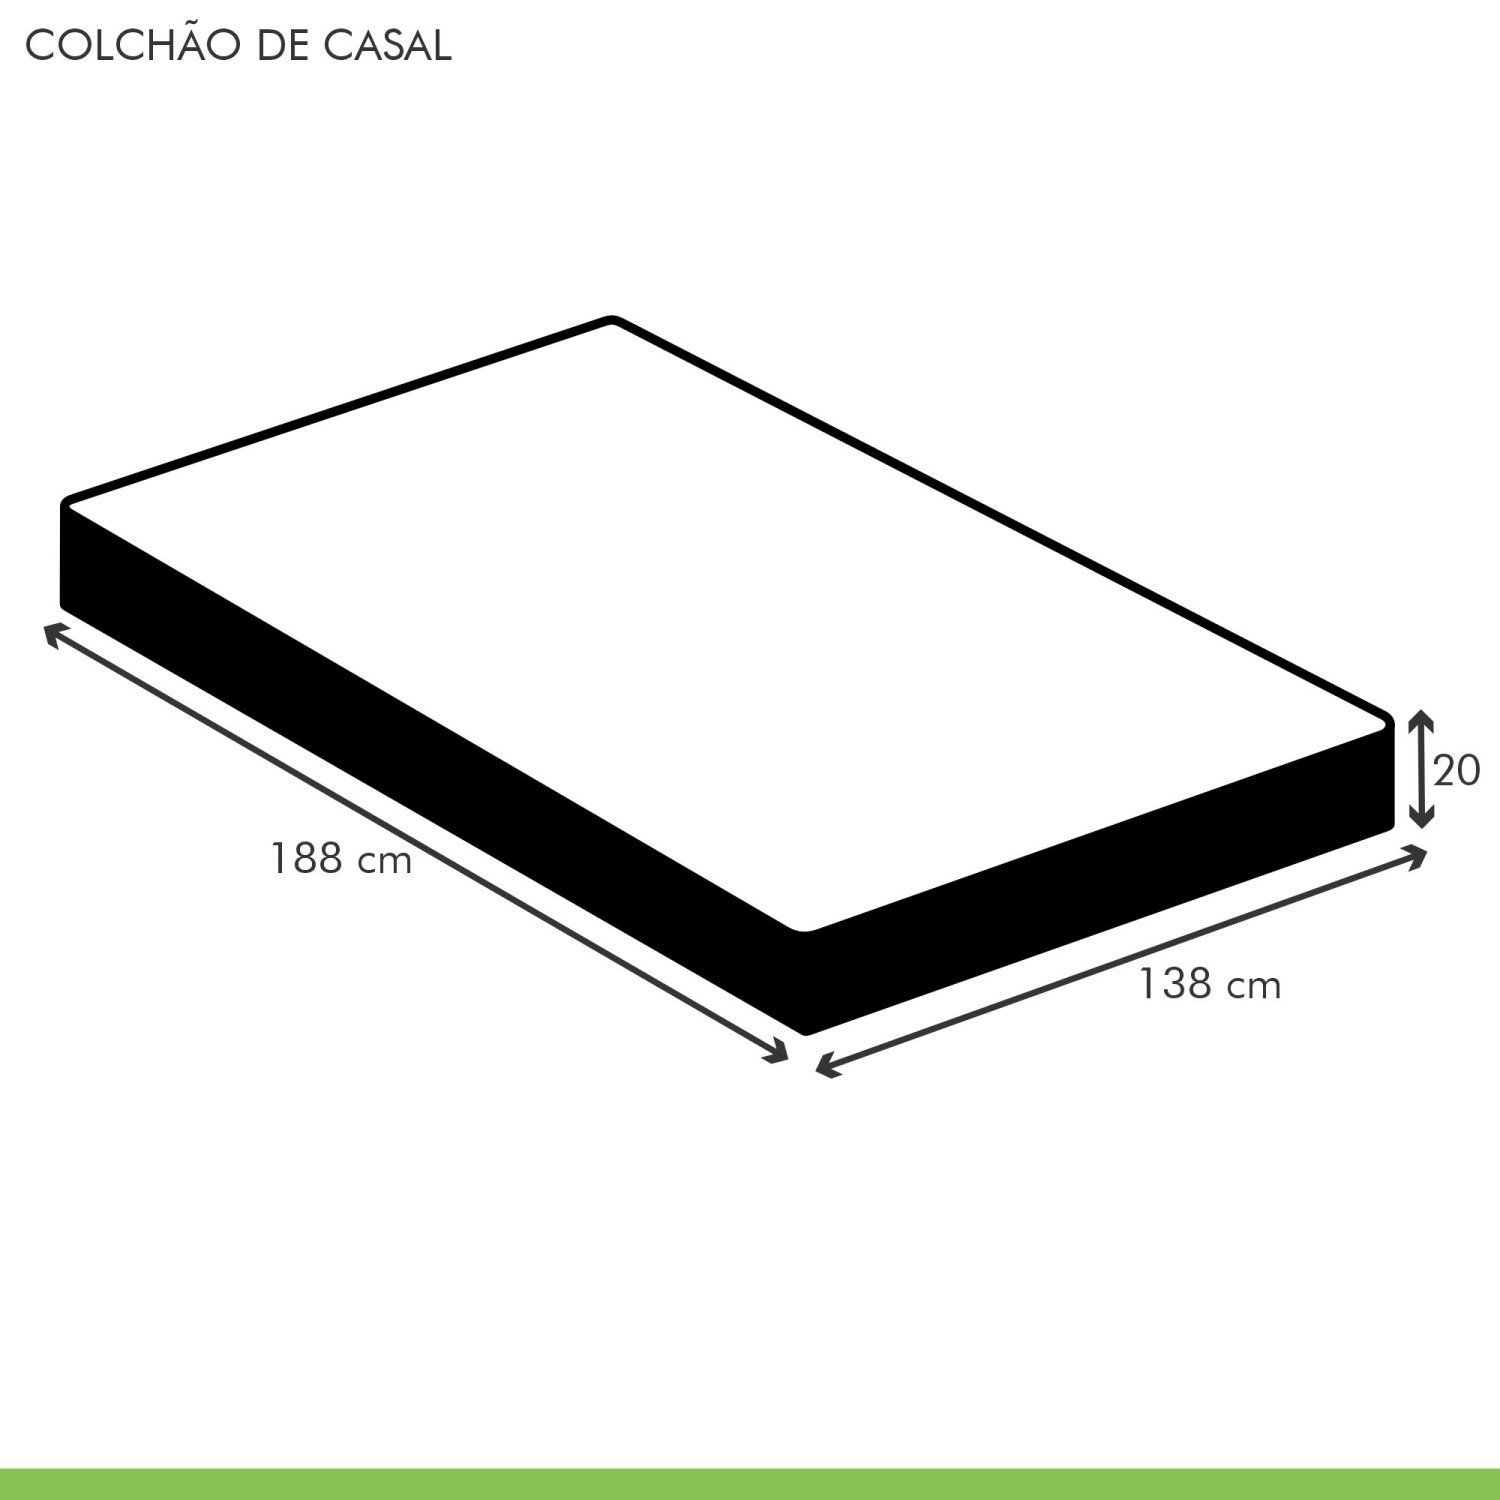 Colchão Casal Unique D45 Duoface 20x138x188cm  - 5